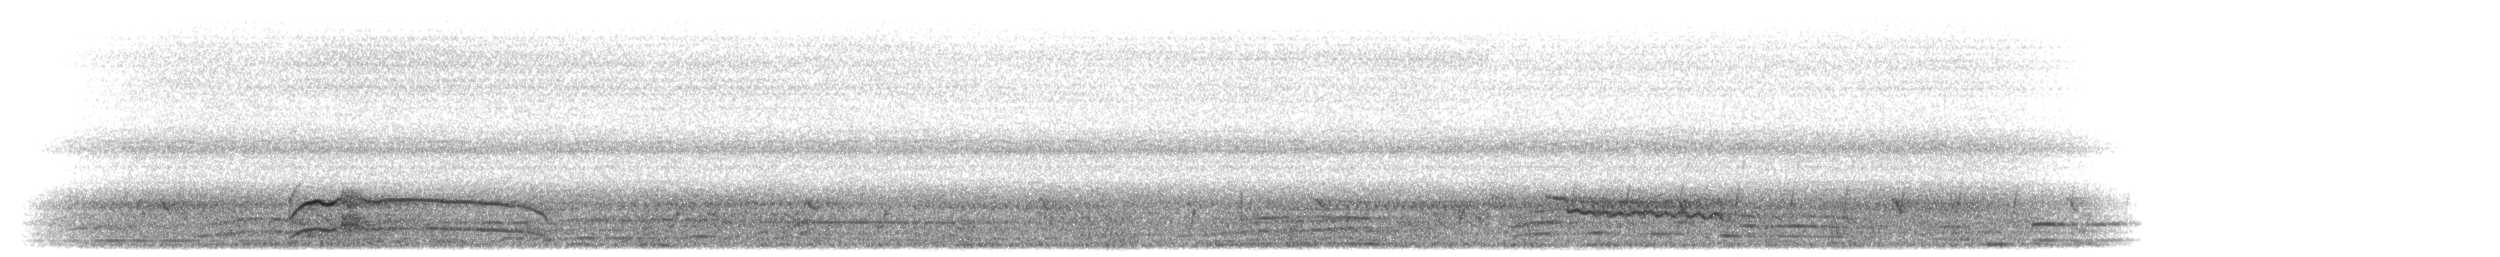 luňák hnědý (ssp. aegyptius/parasitus) - ML277394